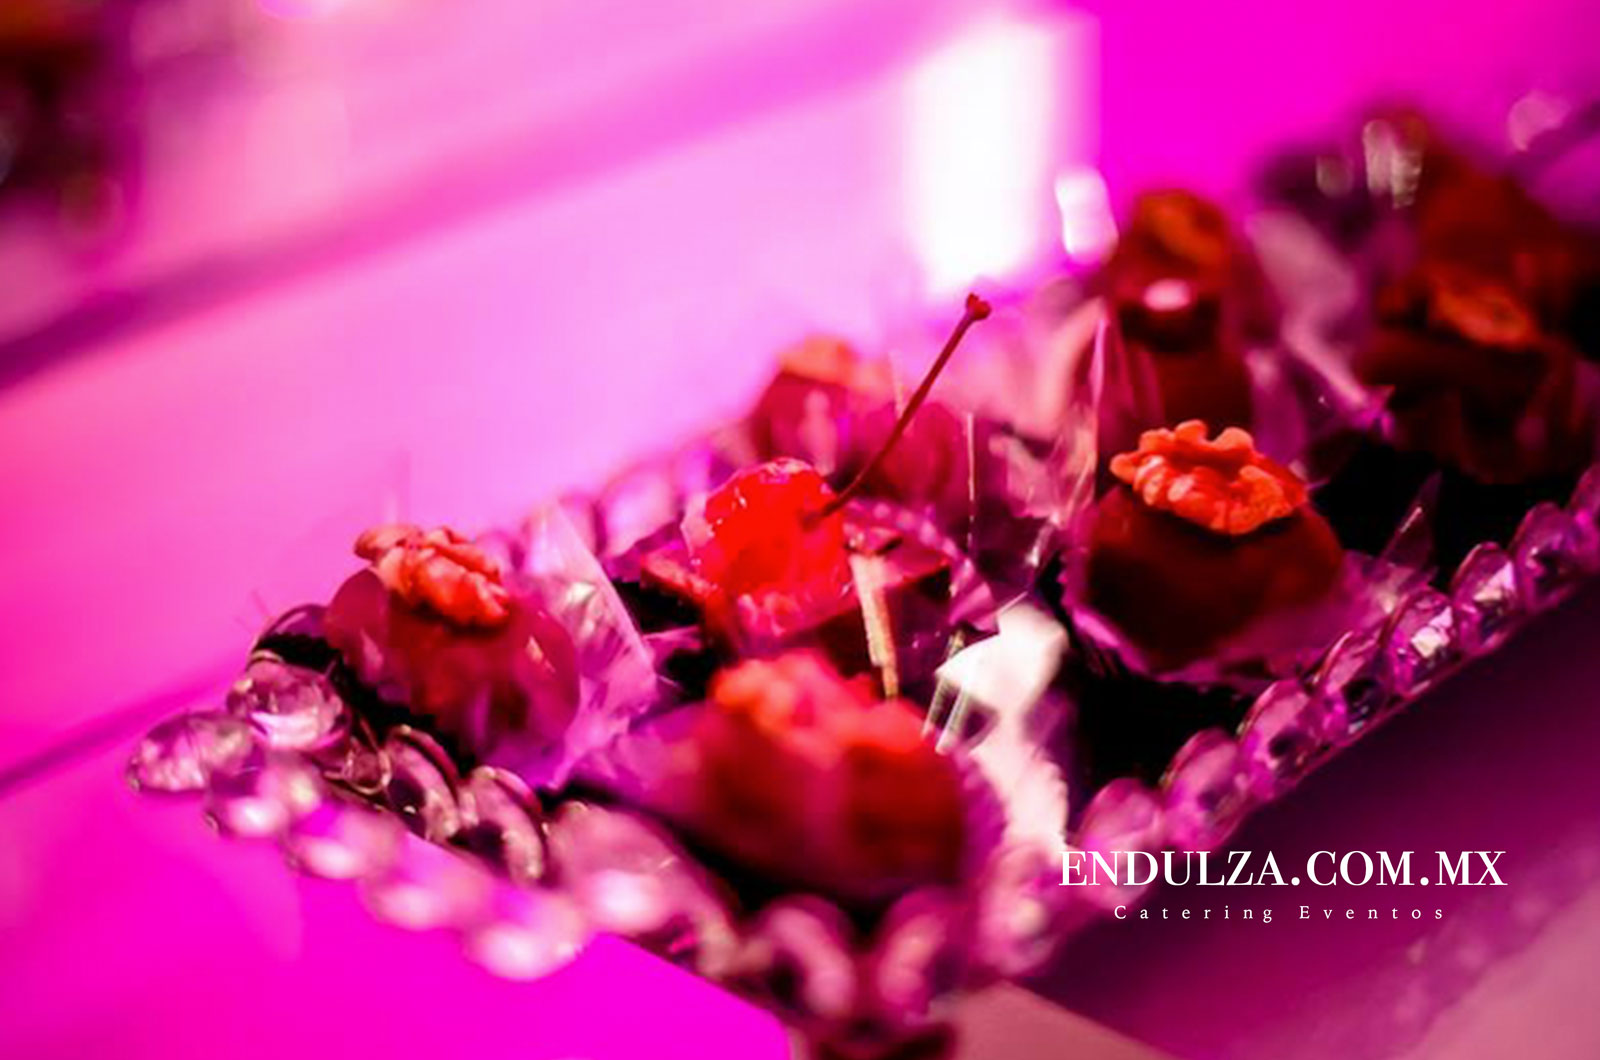 servicio mesas de dulces, montaje elegante con cristaleria, mesas de dulces eventos elegantes, decoracion elegante con flores